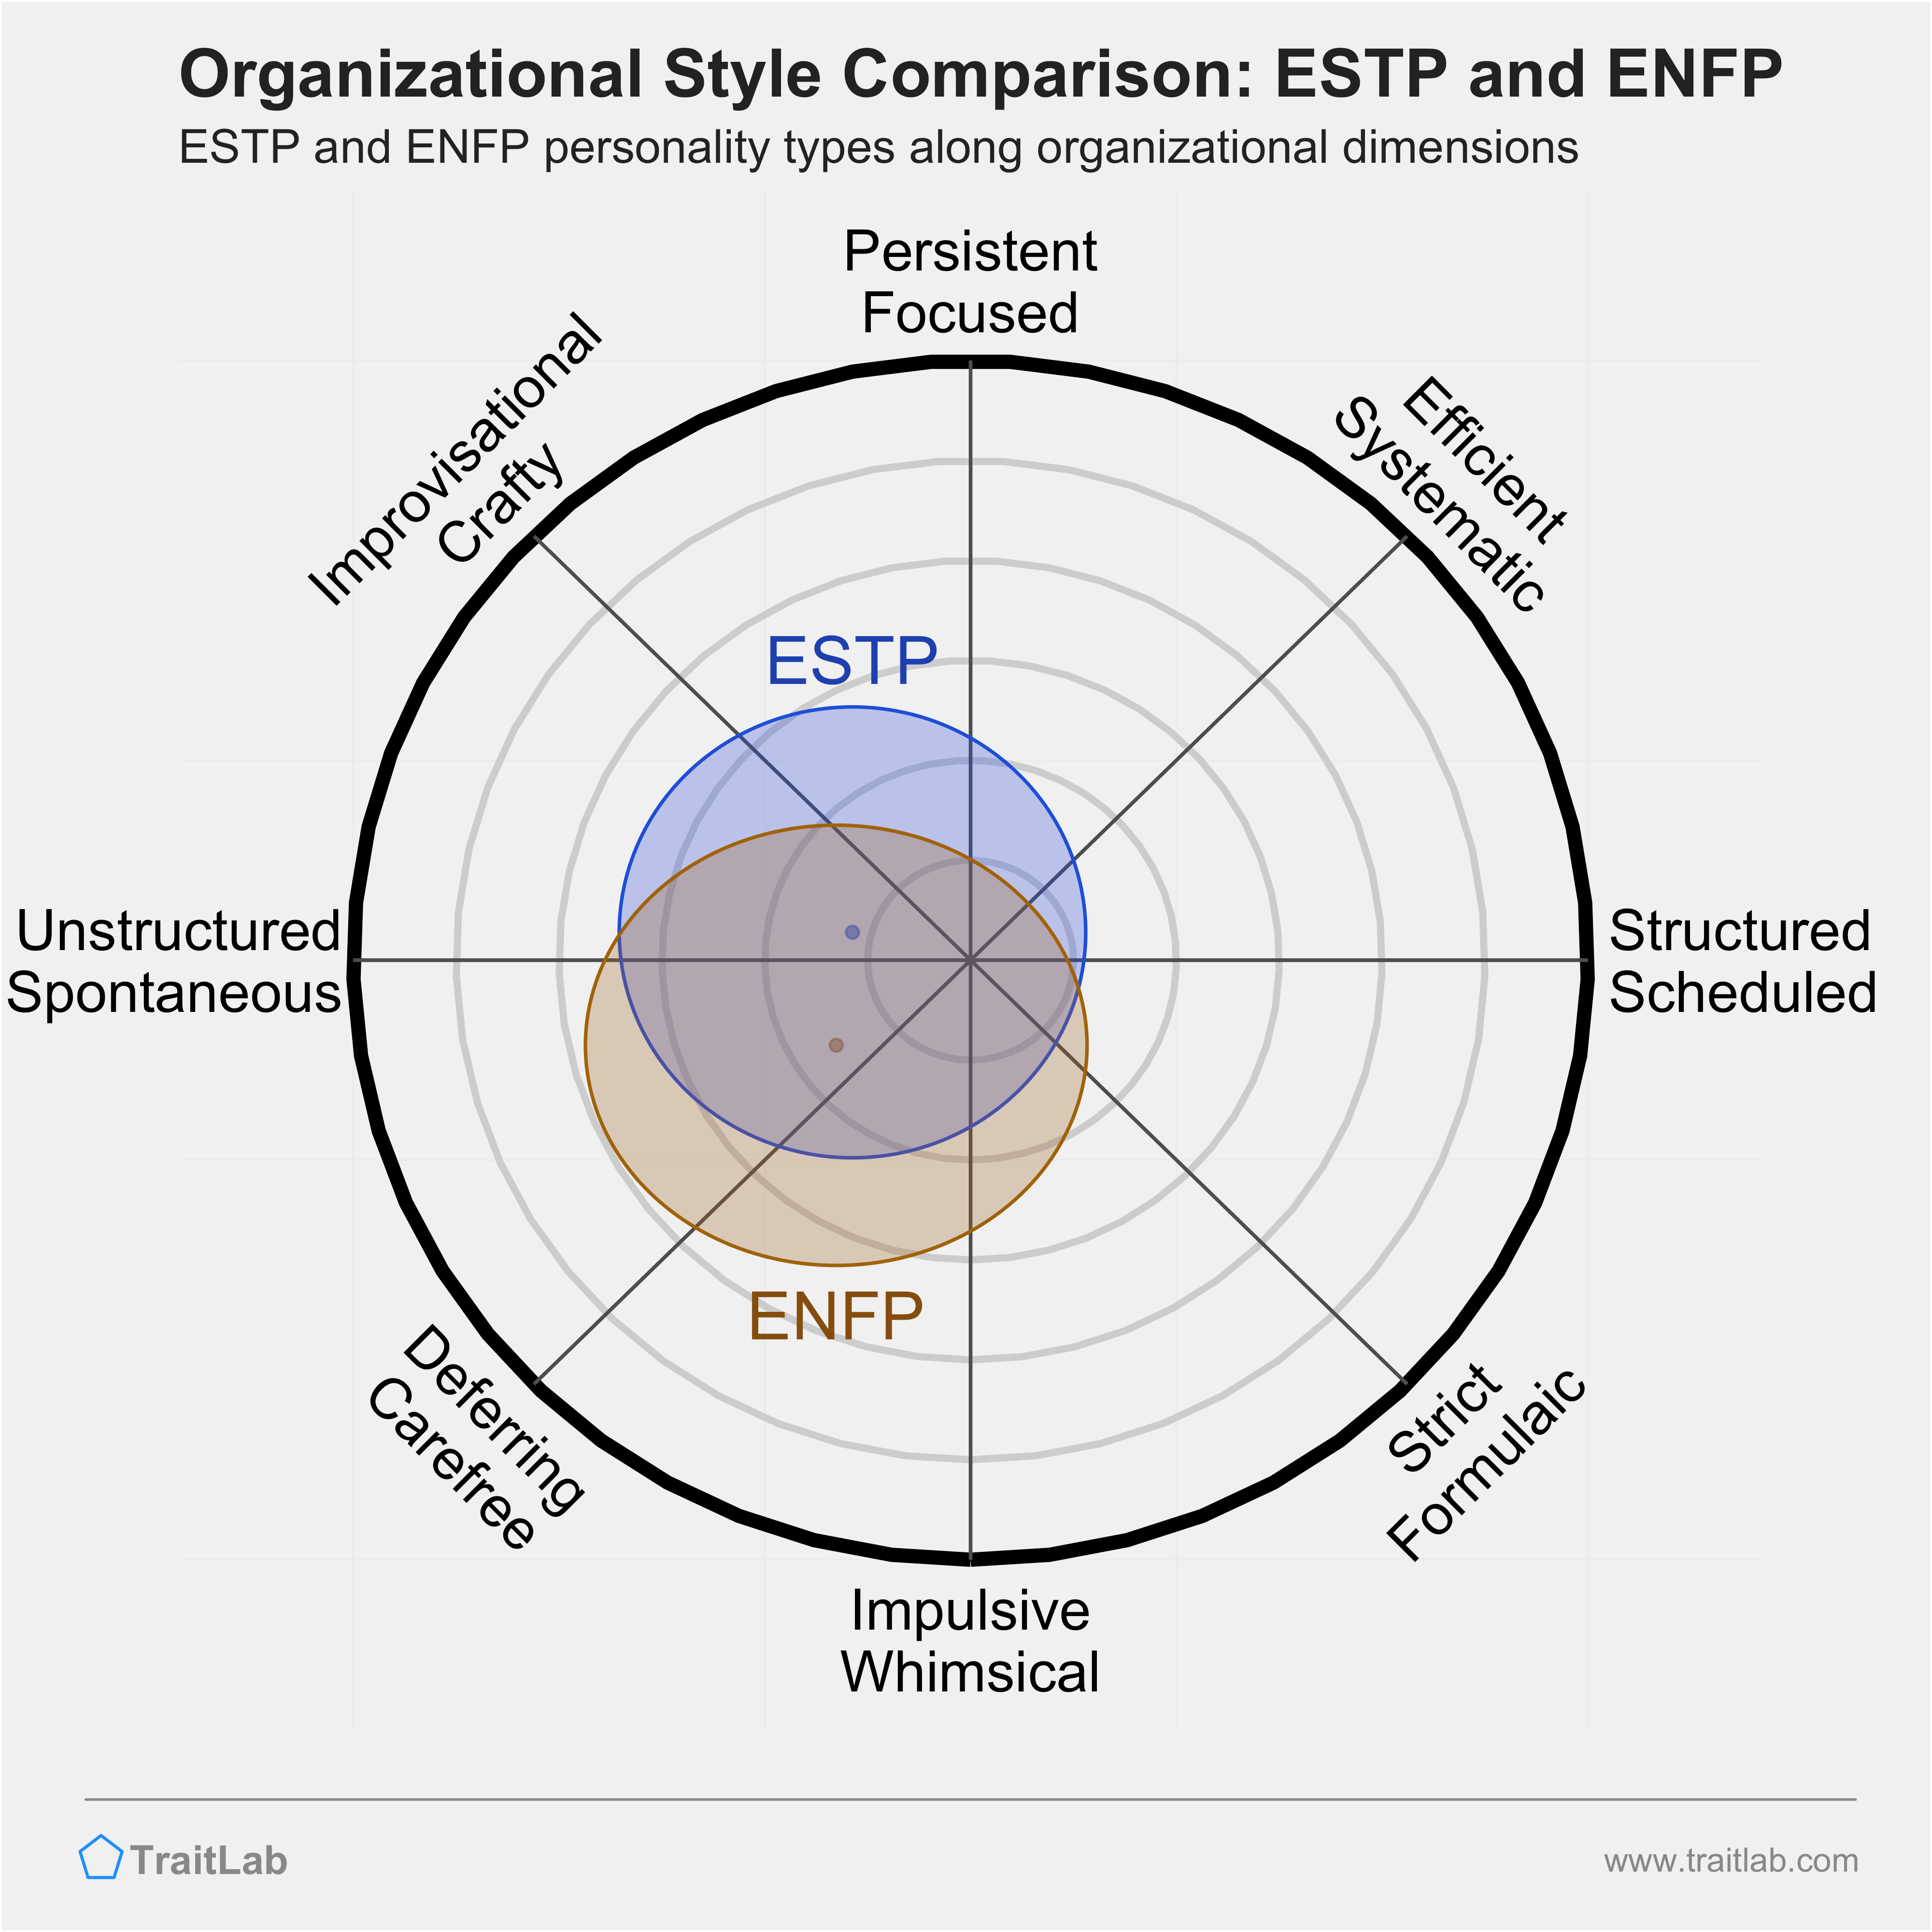 ESTP and ENFP comparison across organizational dimensions